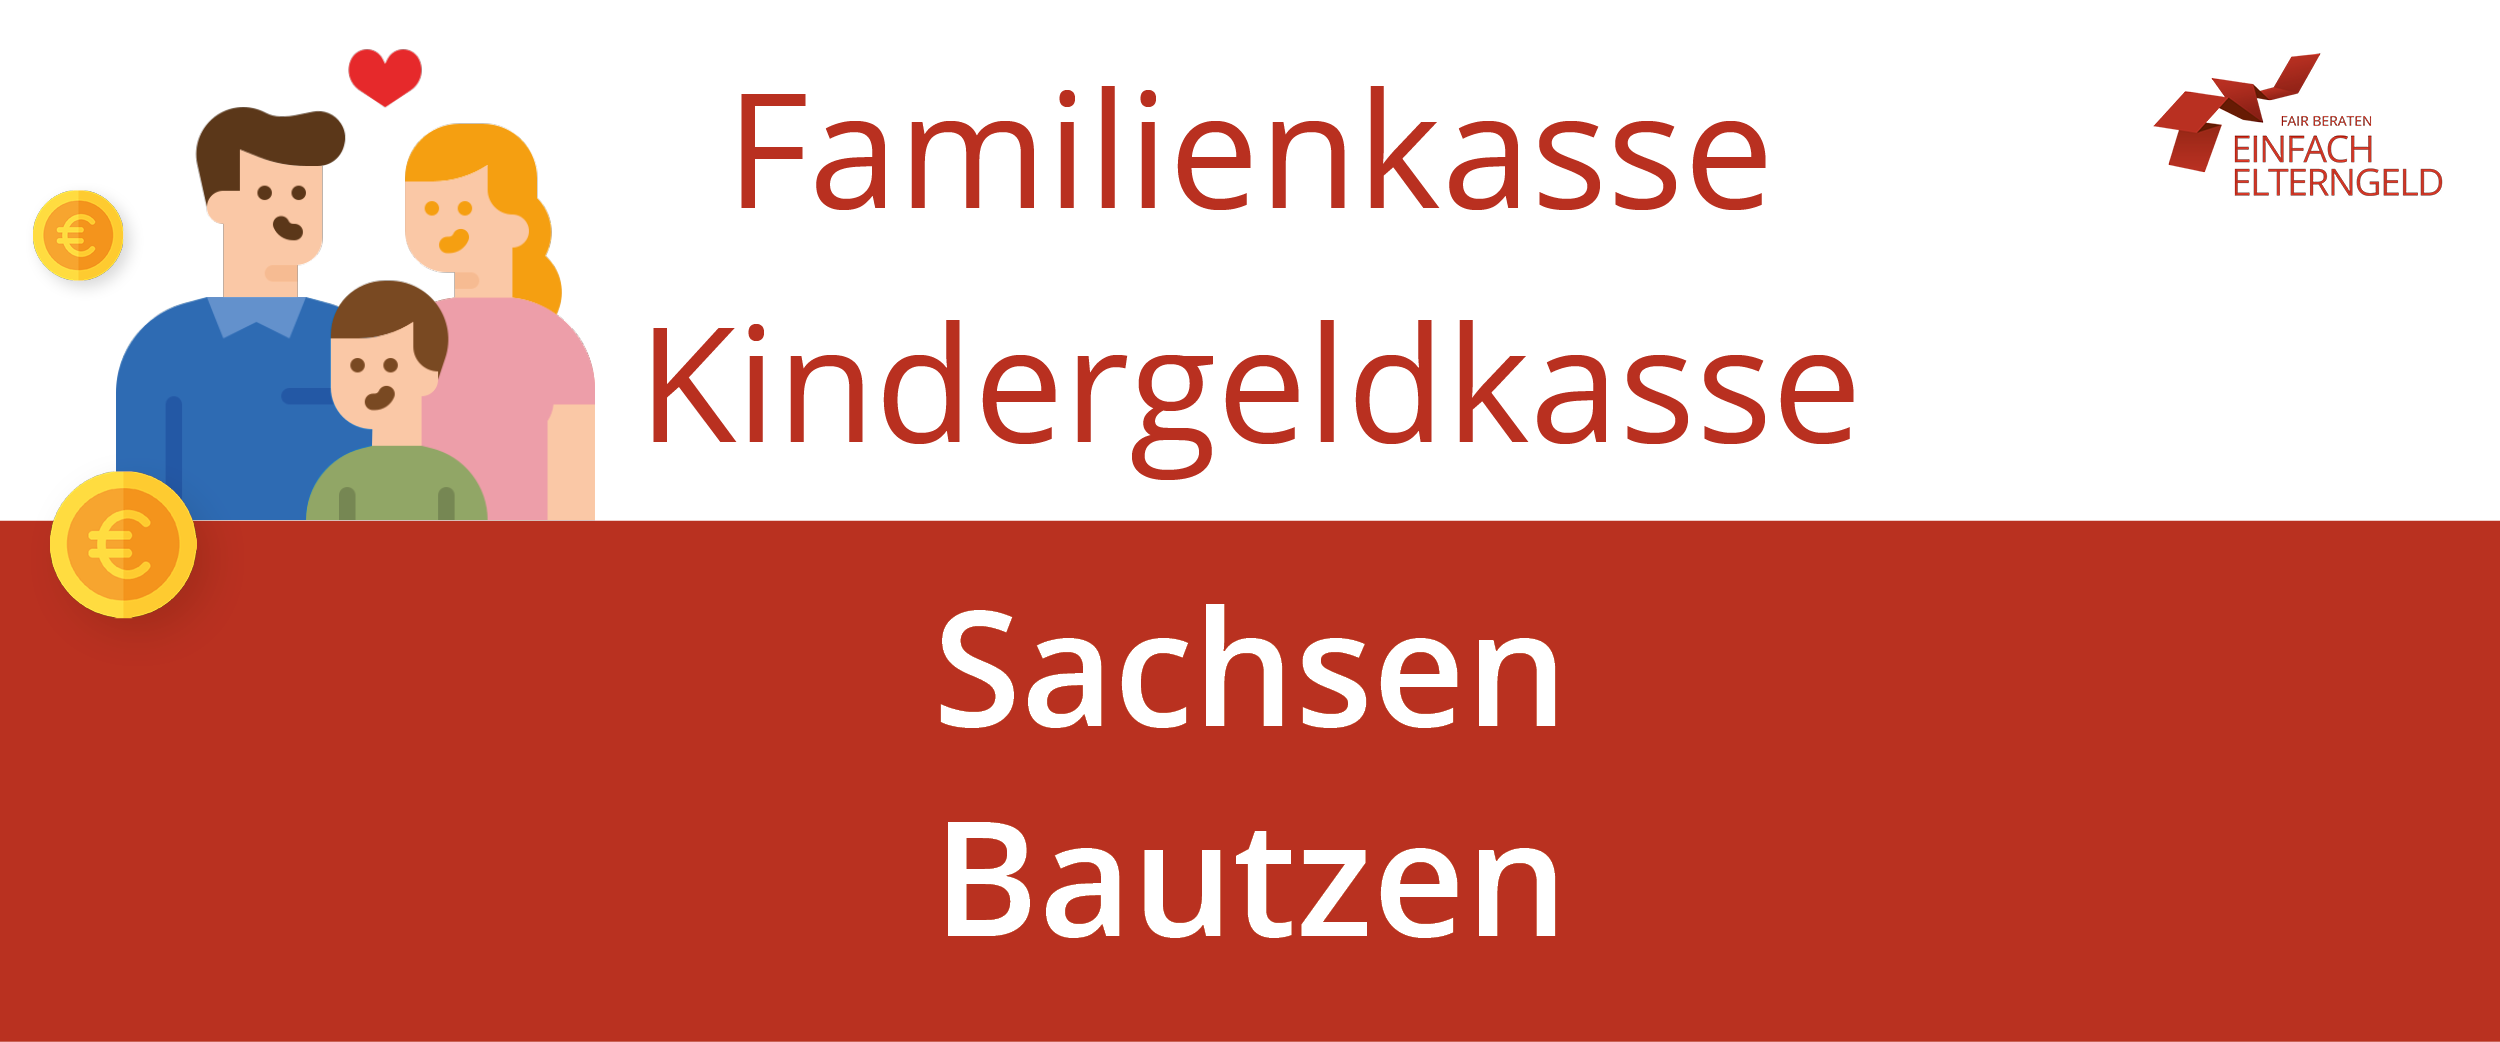 Familienkasse Kindergeldkasse Sachsen Bautzen - So erreichen Sie Ihre Familienkasse.